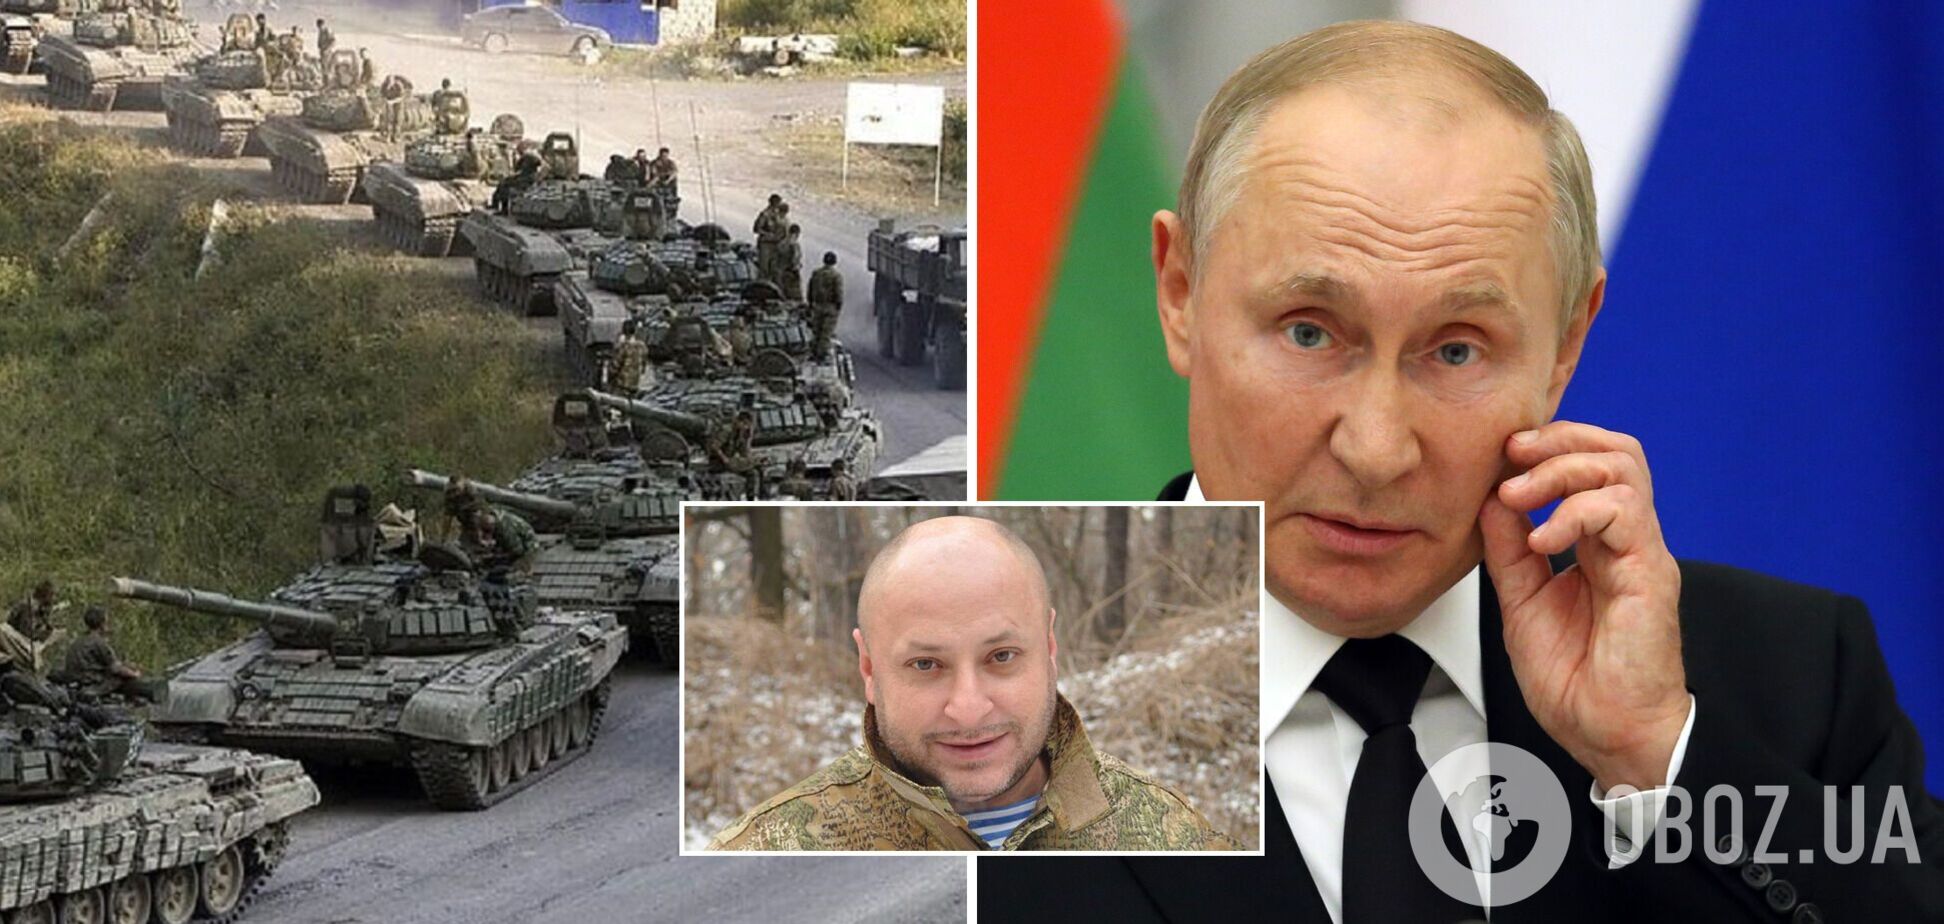 Волошин считает, что Путин собрал недостаточно войск для полномасштабной войны против Украины